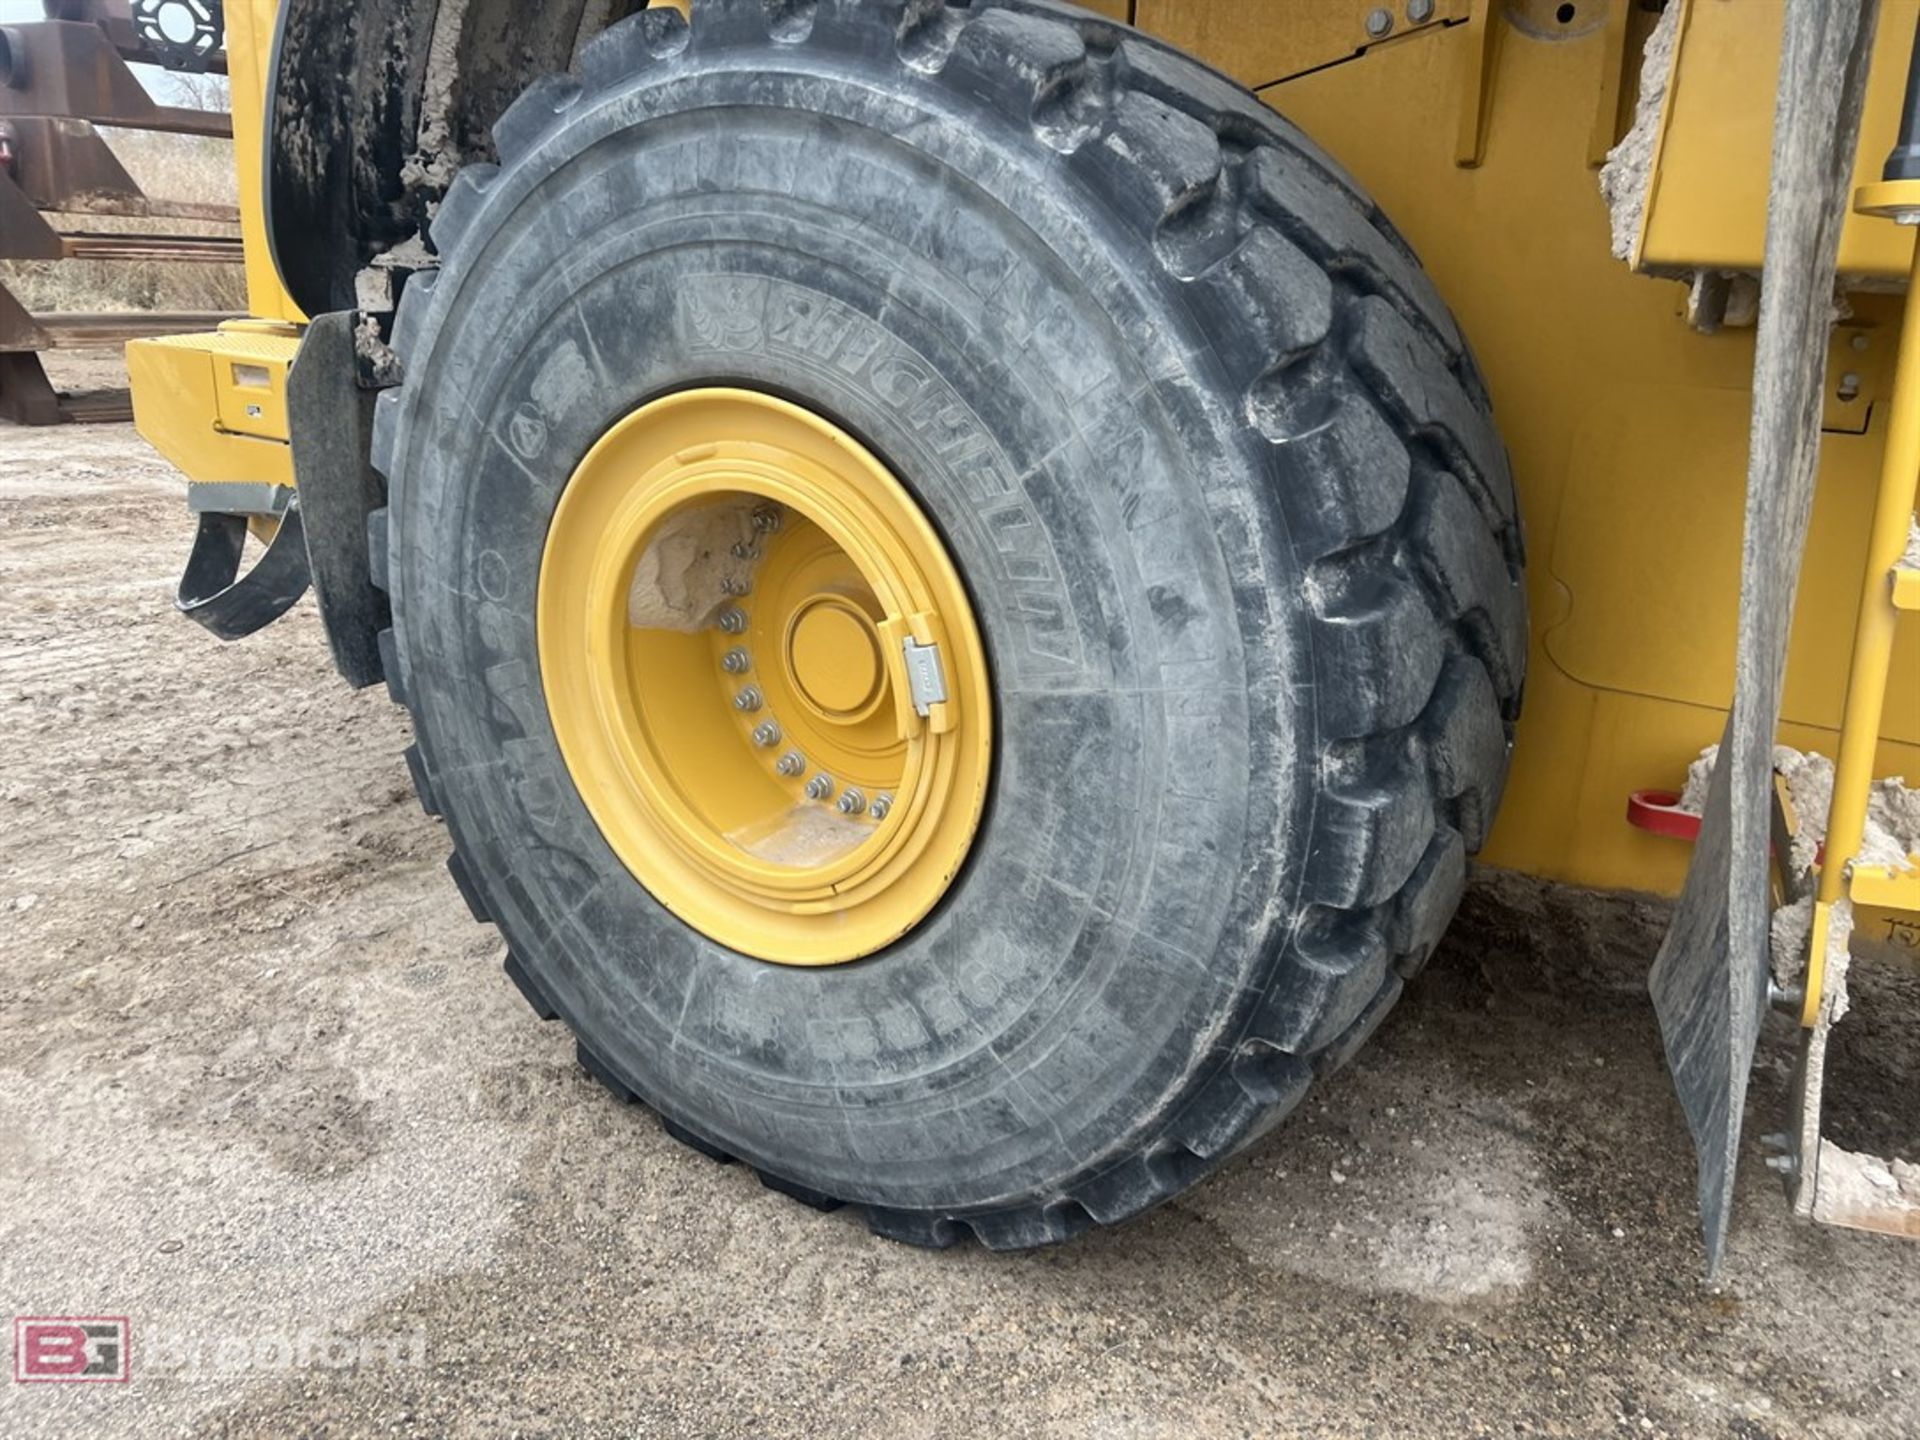 2017 John Deere 844K series III wheel loader - Image 6 of 18